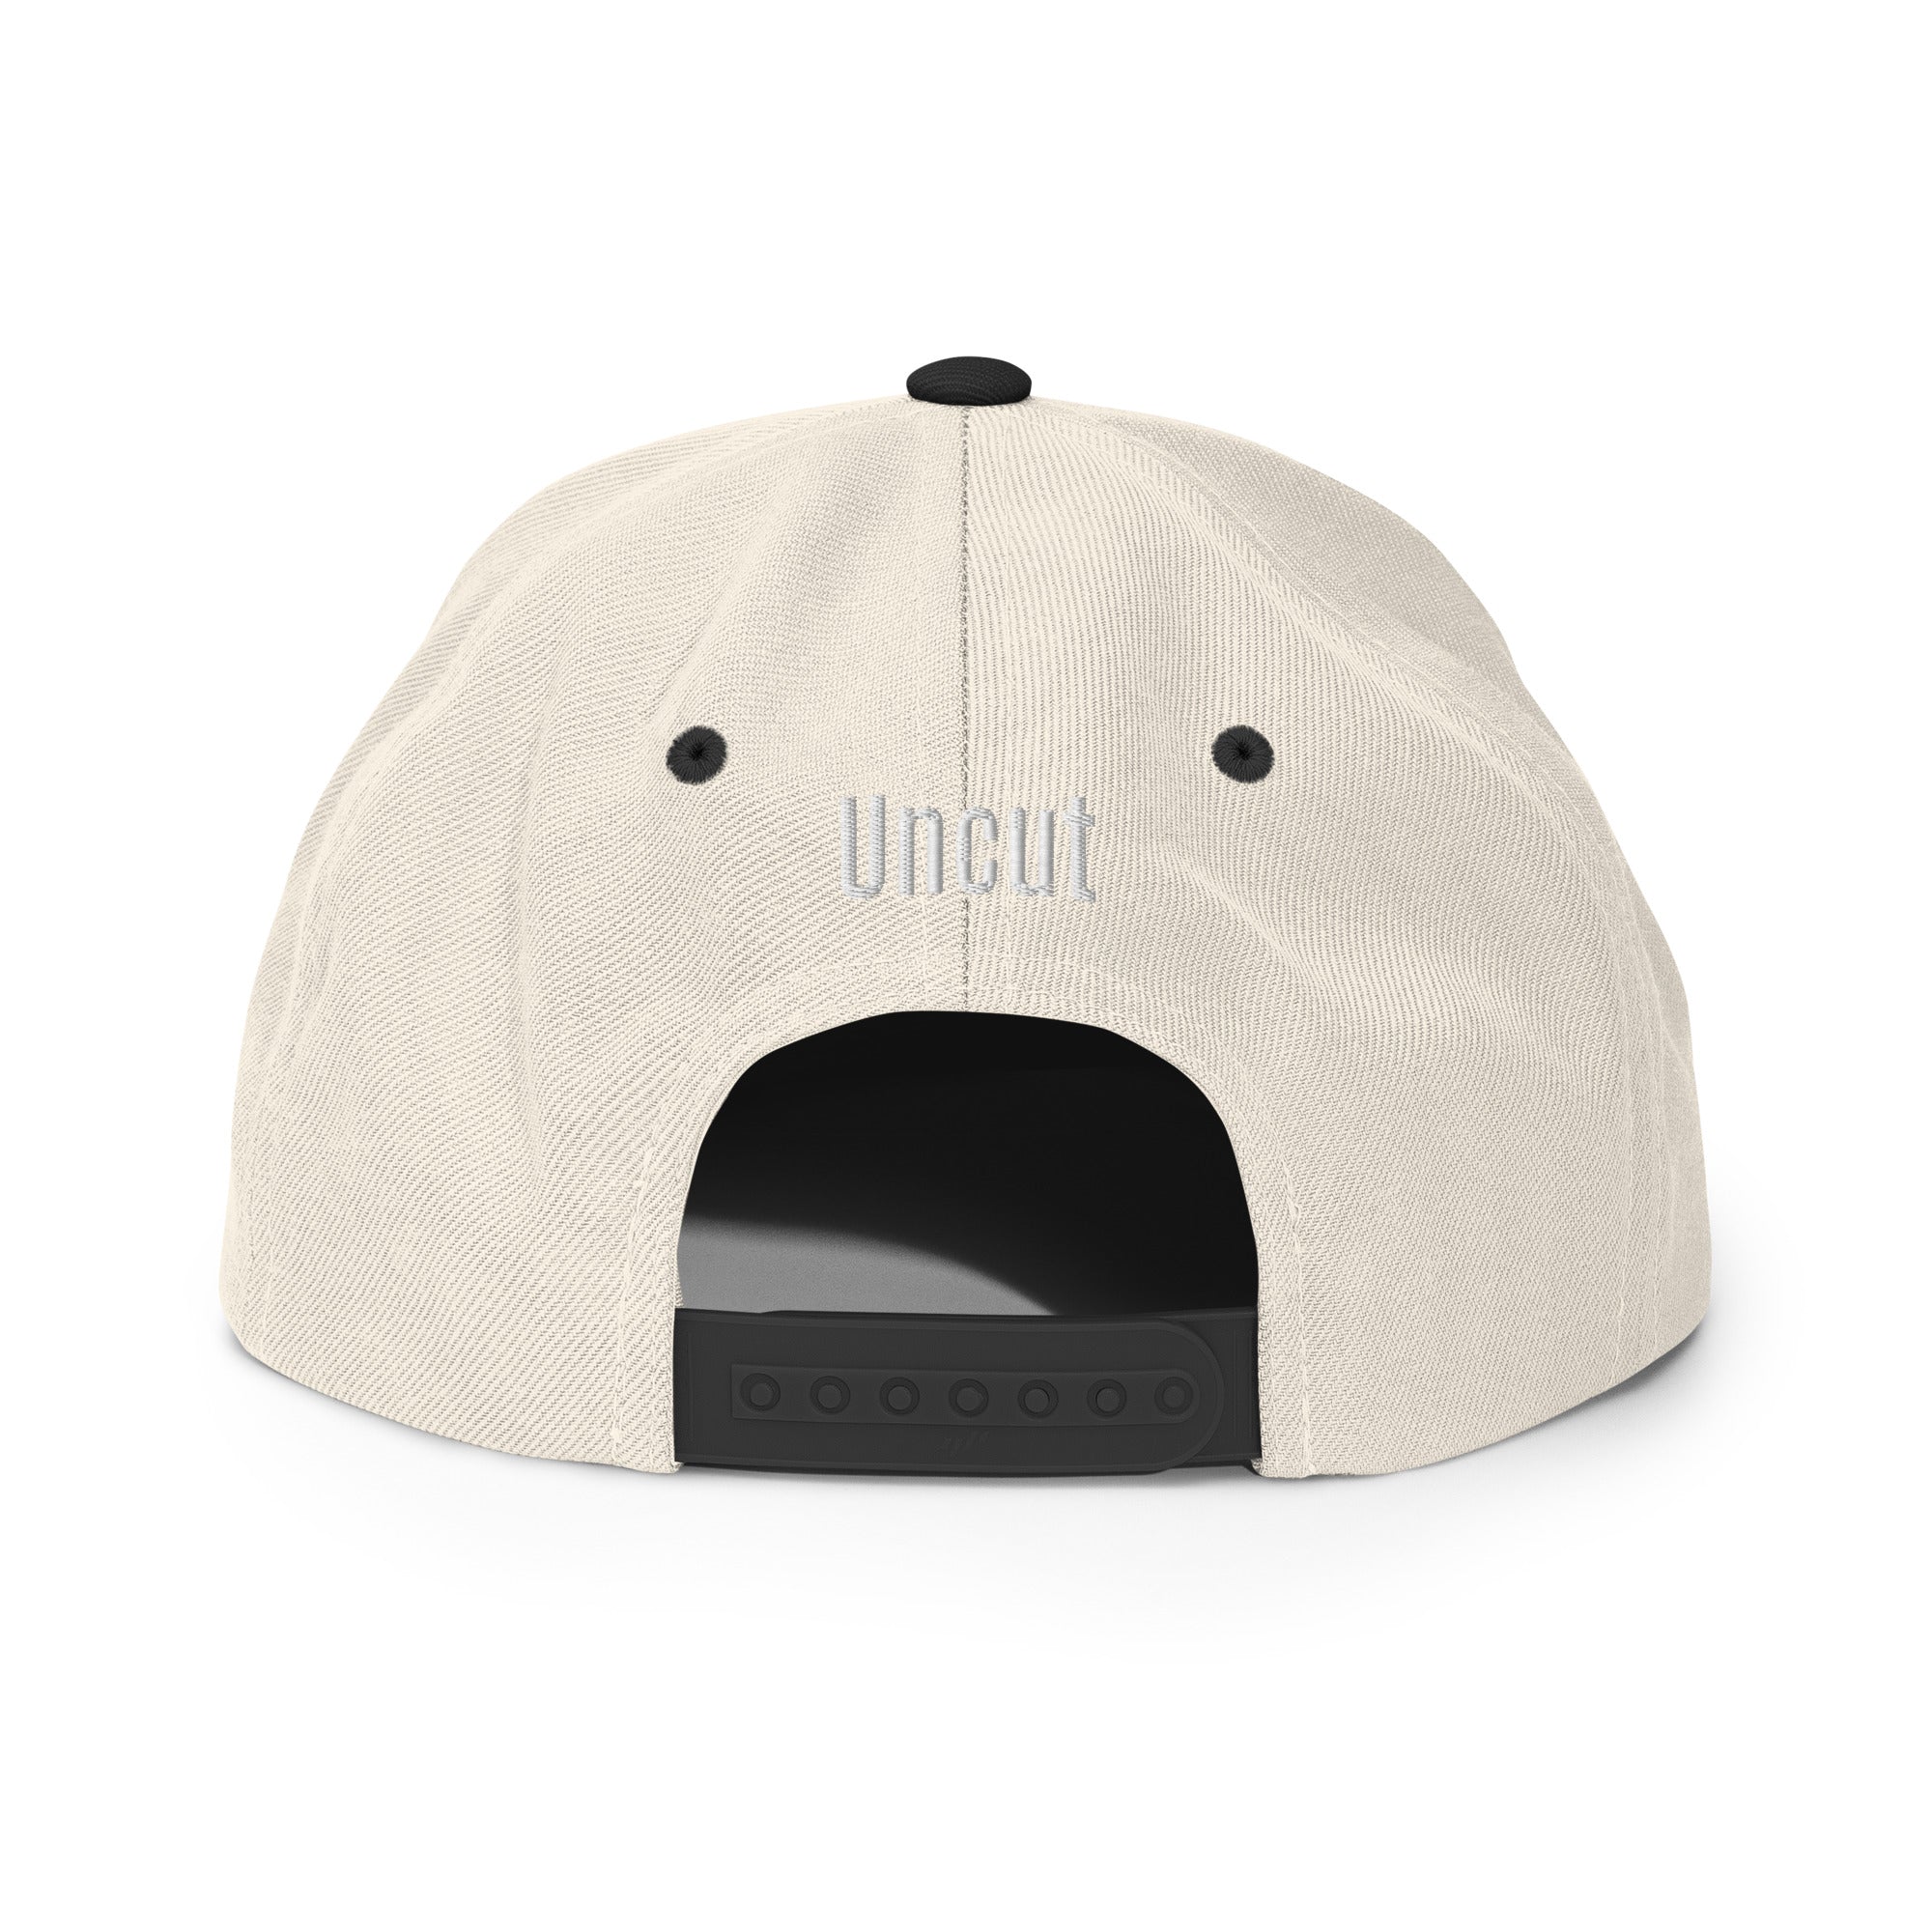 Kokane OG [Snapback Hat]